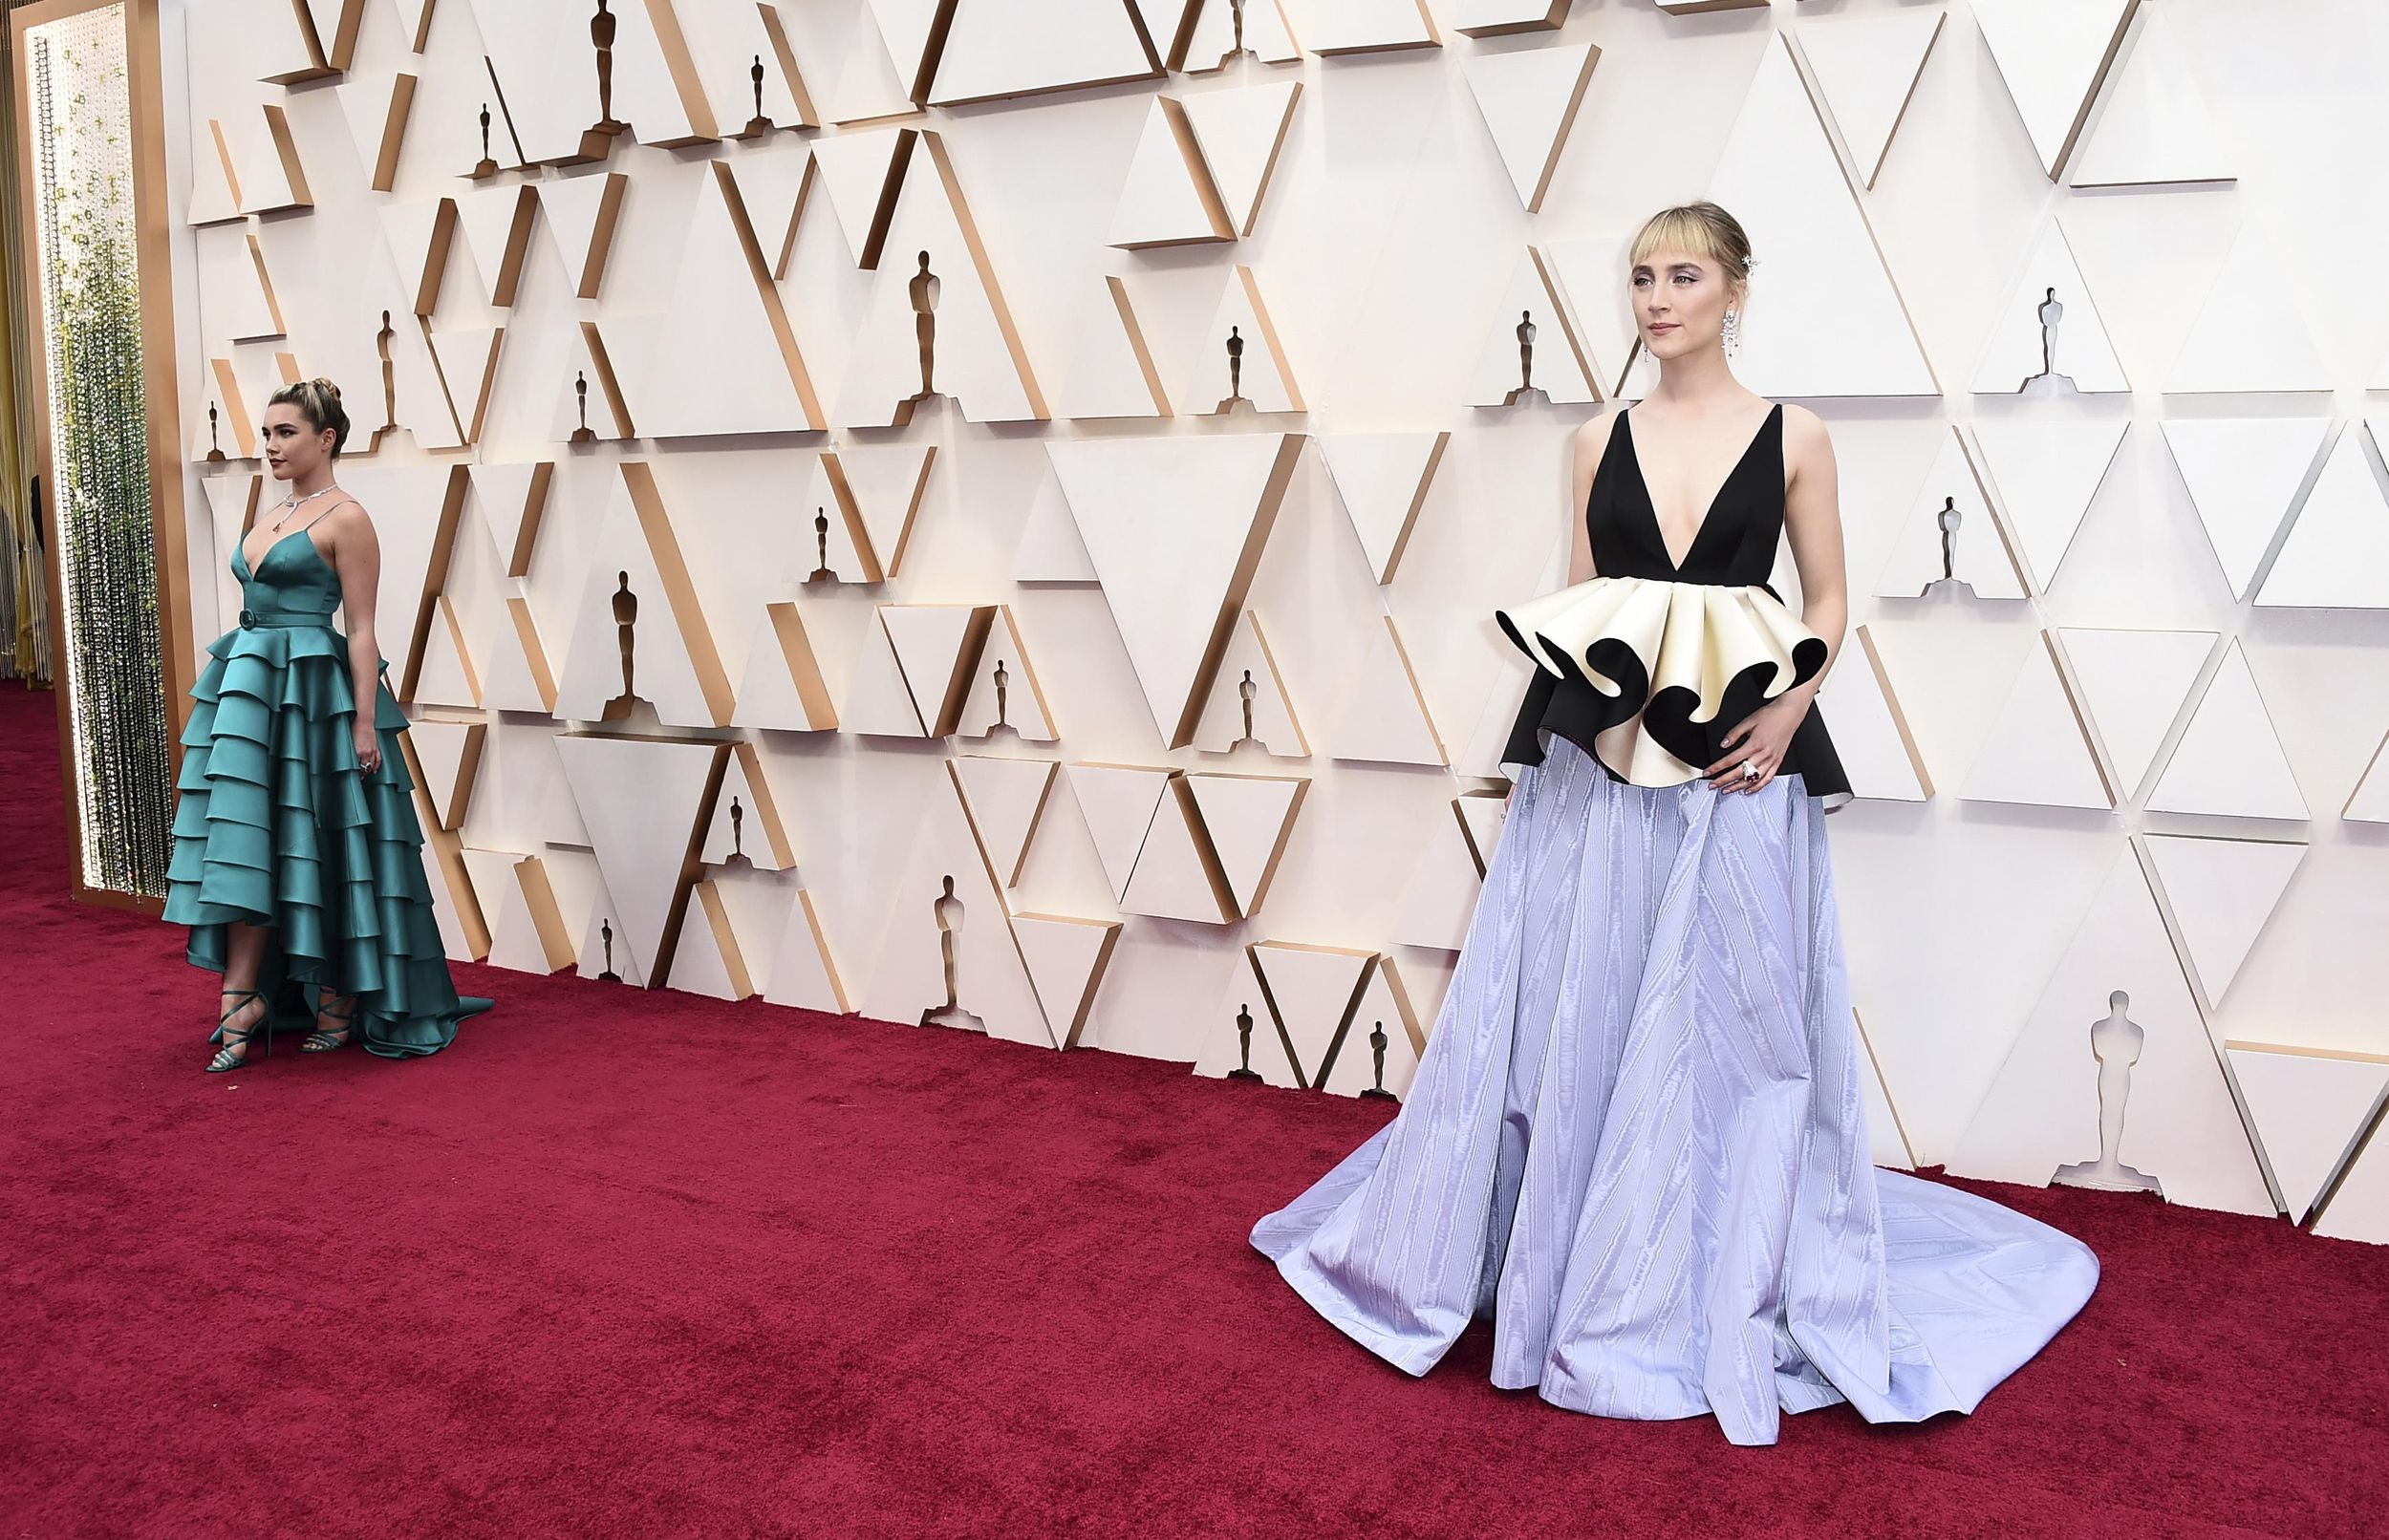 Scarlett Johansson among the bombshells on Oscars red carpet – KGET 17